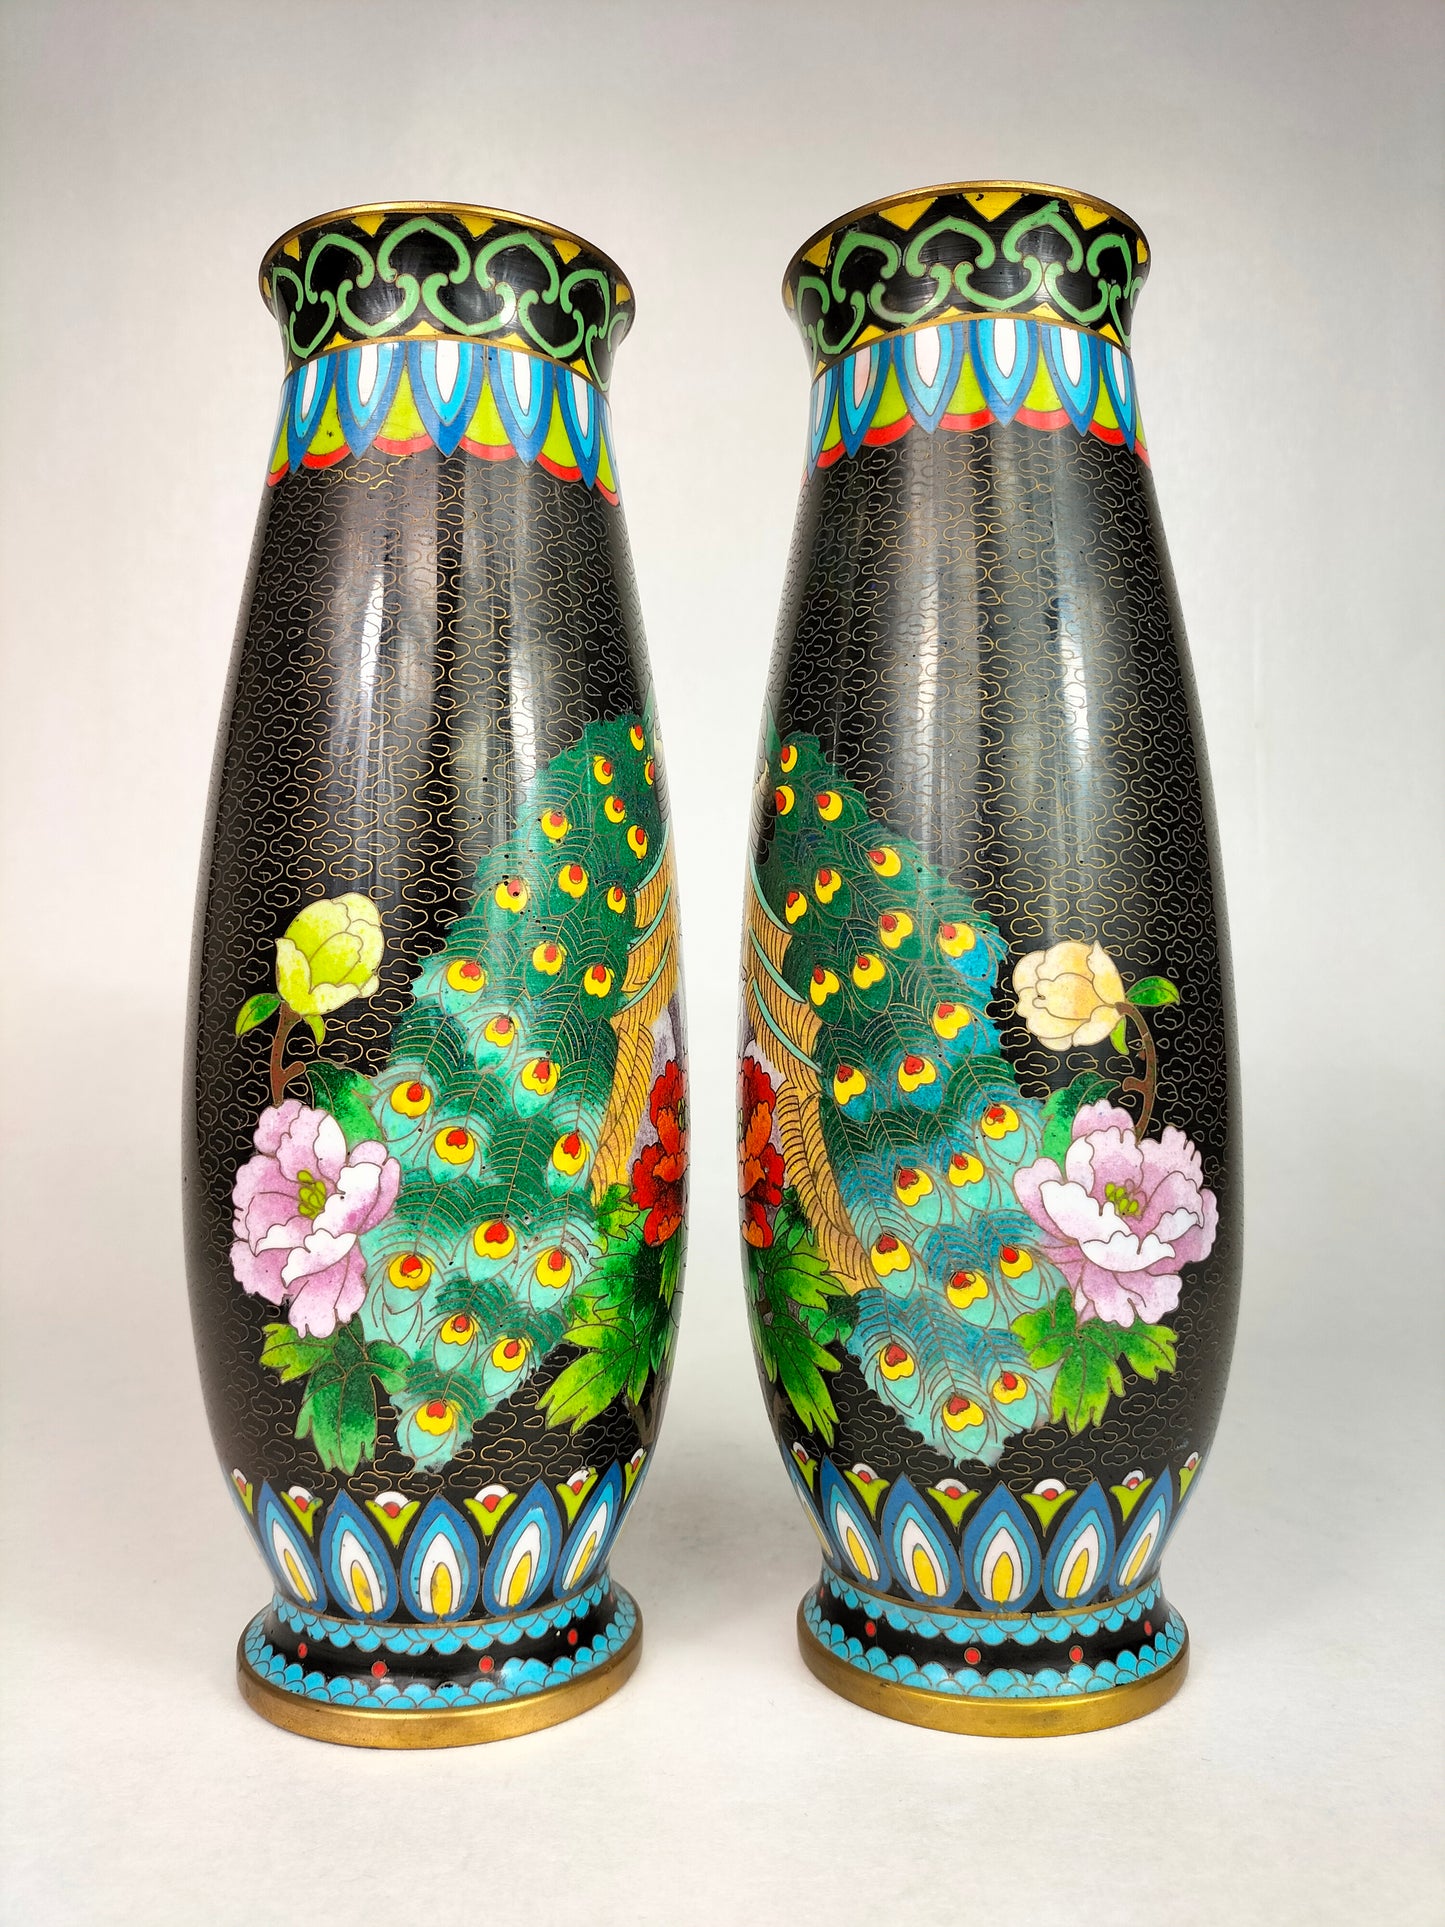 一对装饰孔雀的中国景泰蓝花瓶 // 20 世纪